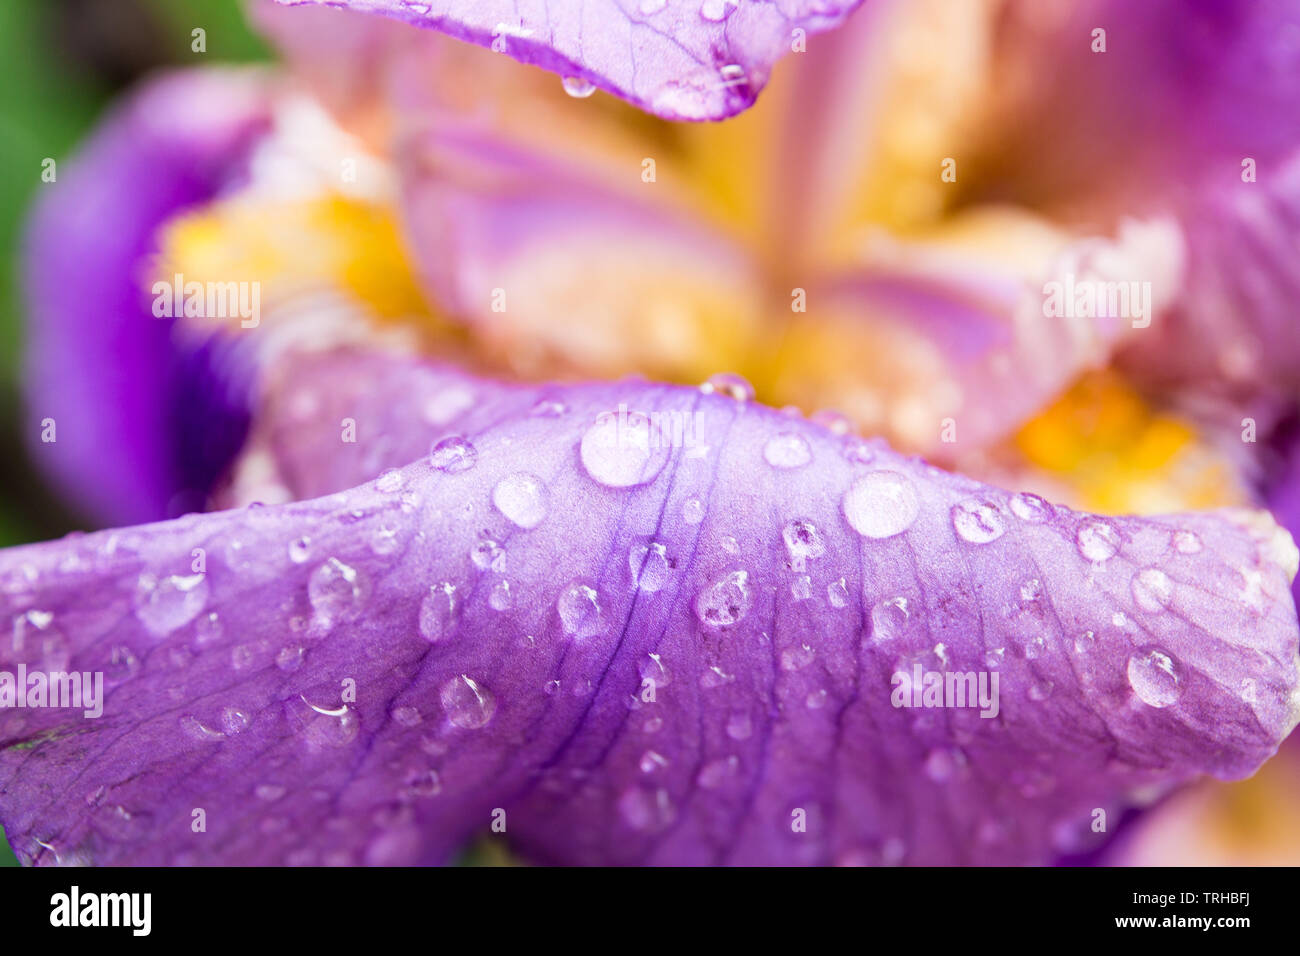 Púrpura iris barbado bloom el pistilo y los pétalos closeup. En el interior de la flor del iris, morado, violeta, amarillo y blanco. Fotografía macro de iris. Foto de stock